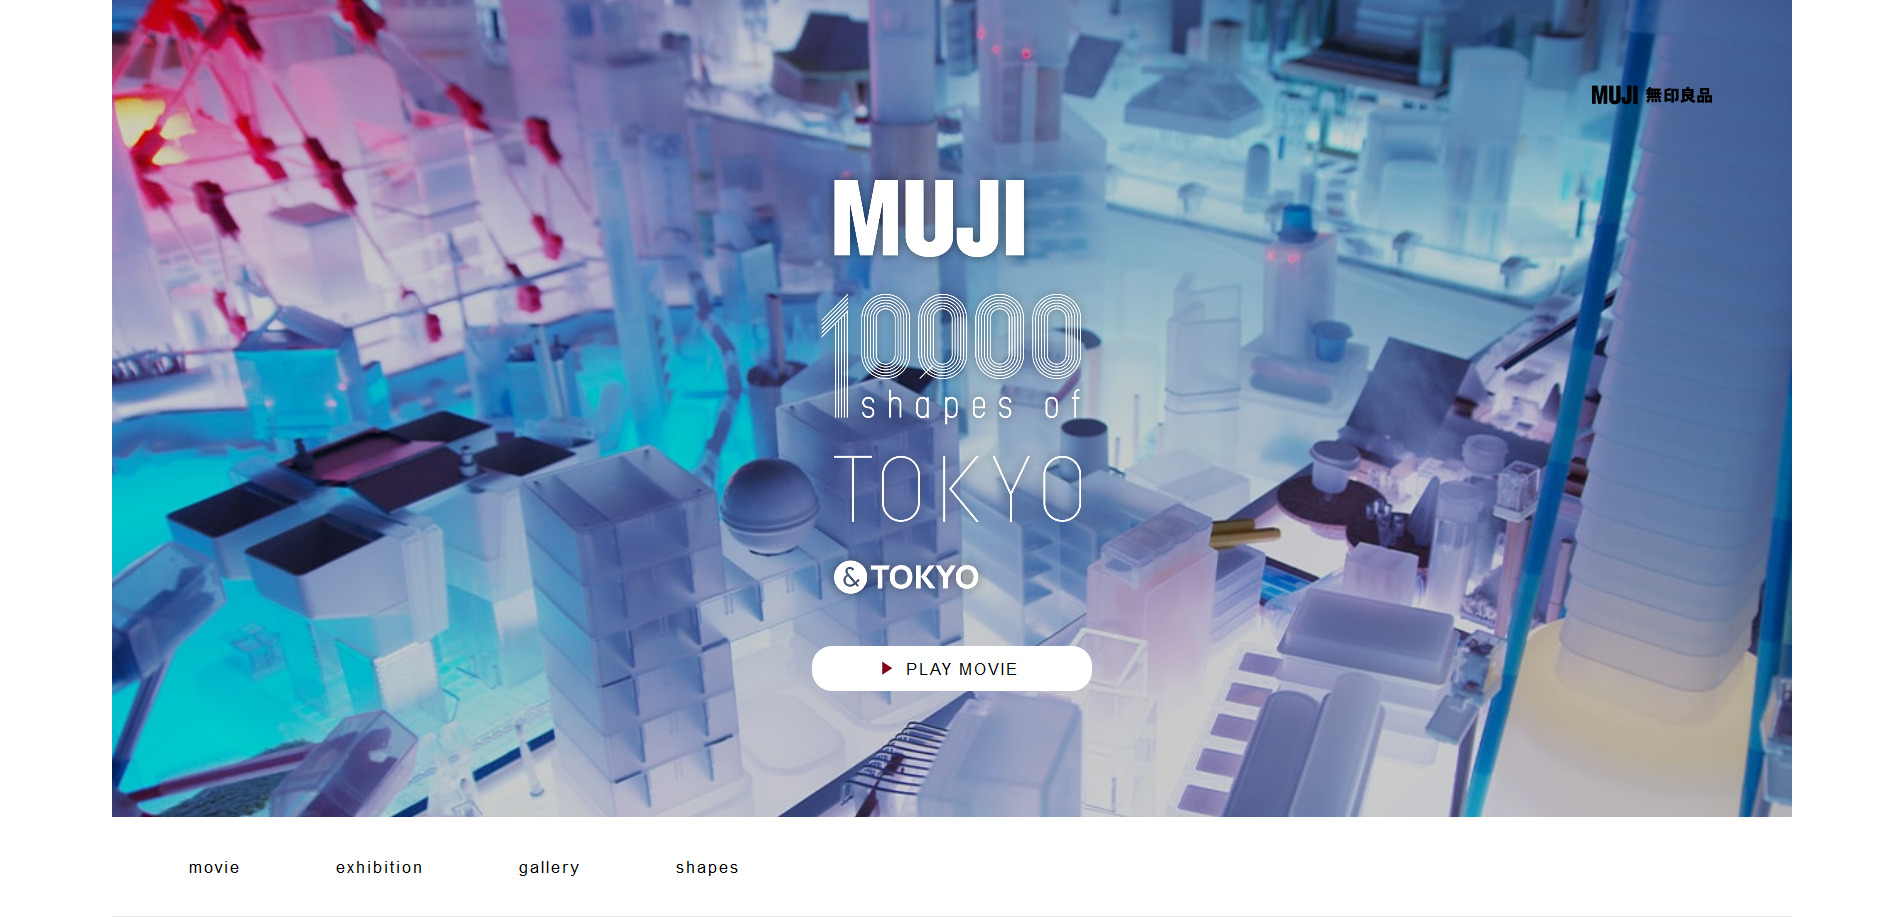 MUJI　10,000shapes of TOKYO